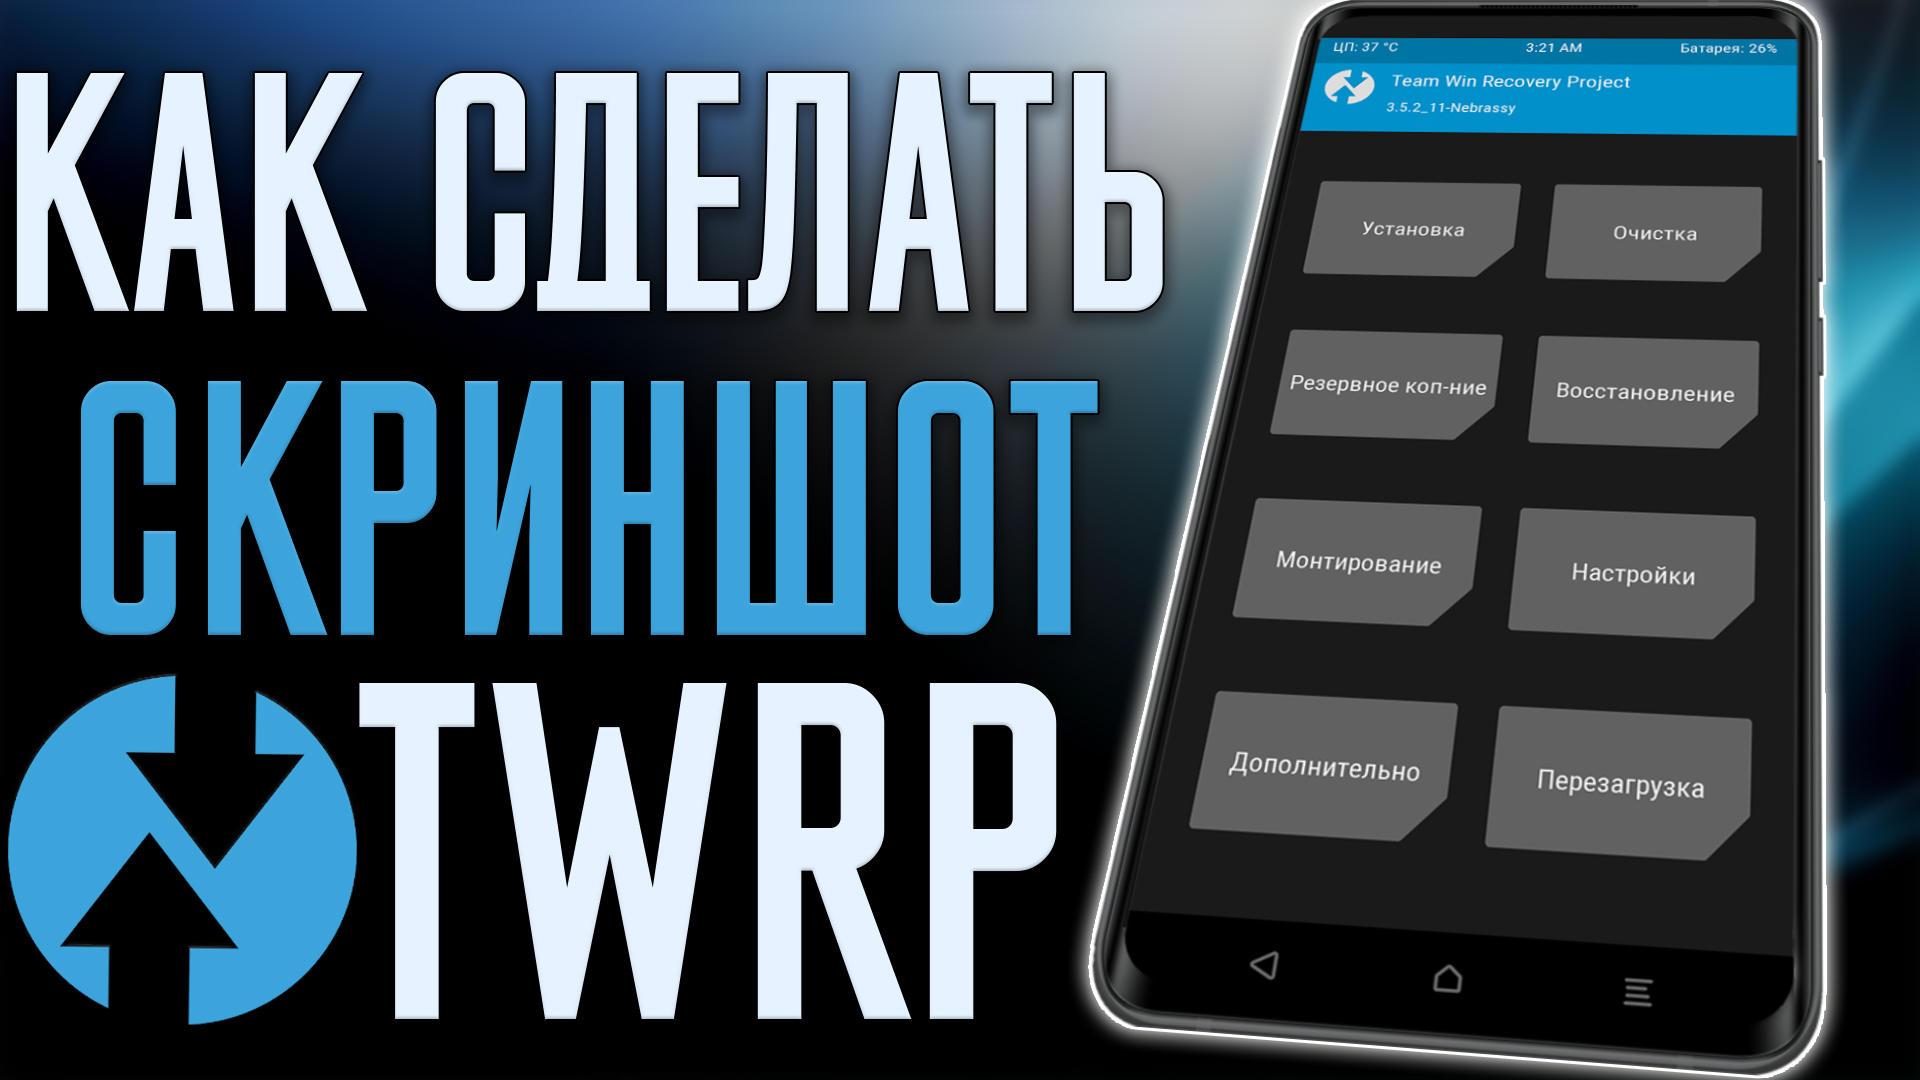 Как Cделать СКРИНШОТ в TWRP на любом Смартфоне !